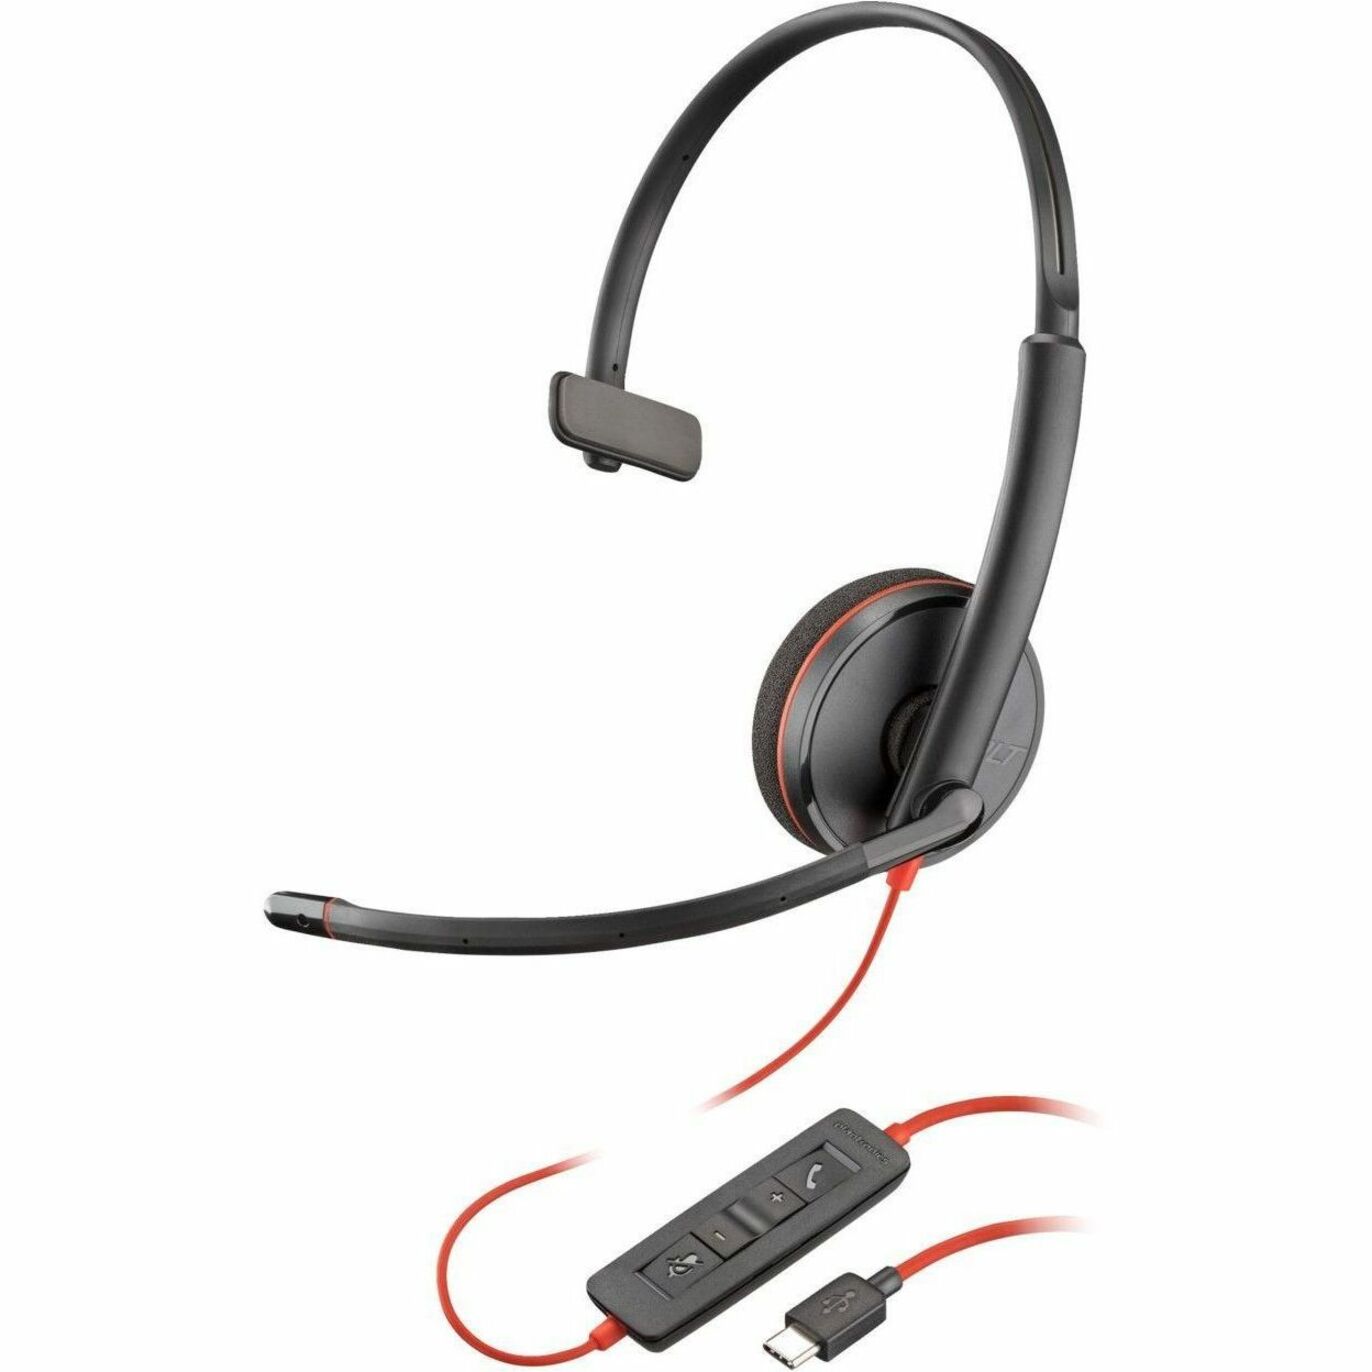 سماعة رأس بولي 80S09A6 بلاك واير 3210 ، أحادية الأذن على الأذن USB نوع C ، ميني فون (3.5 ملم) ، قاطع الضوضاء